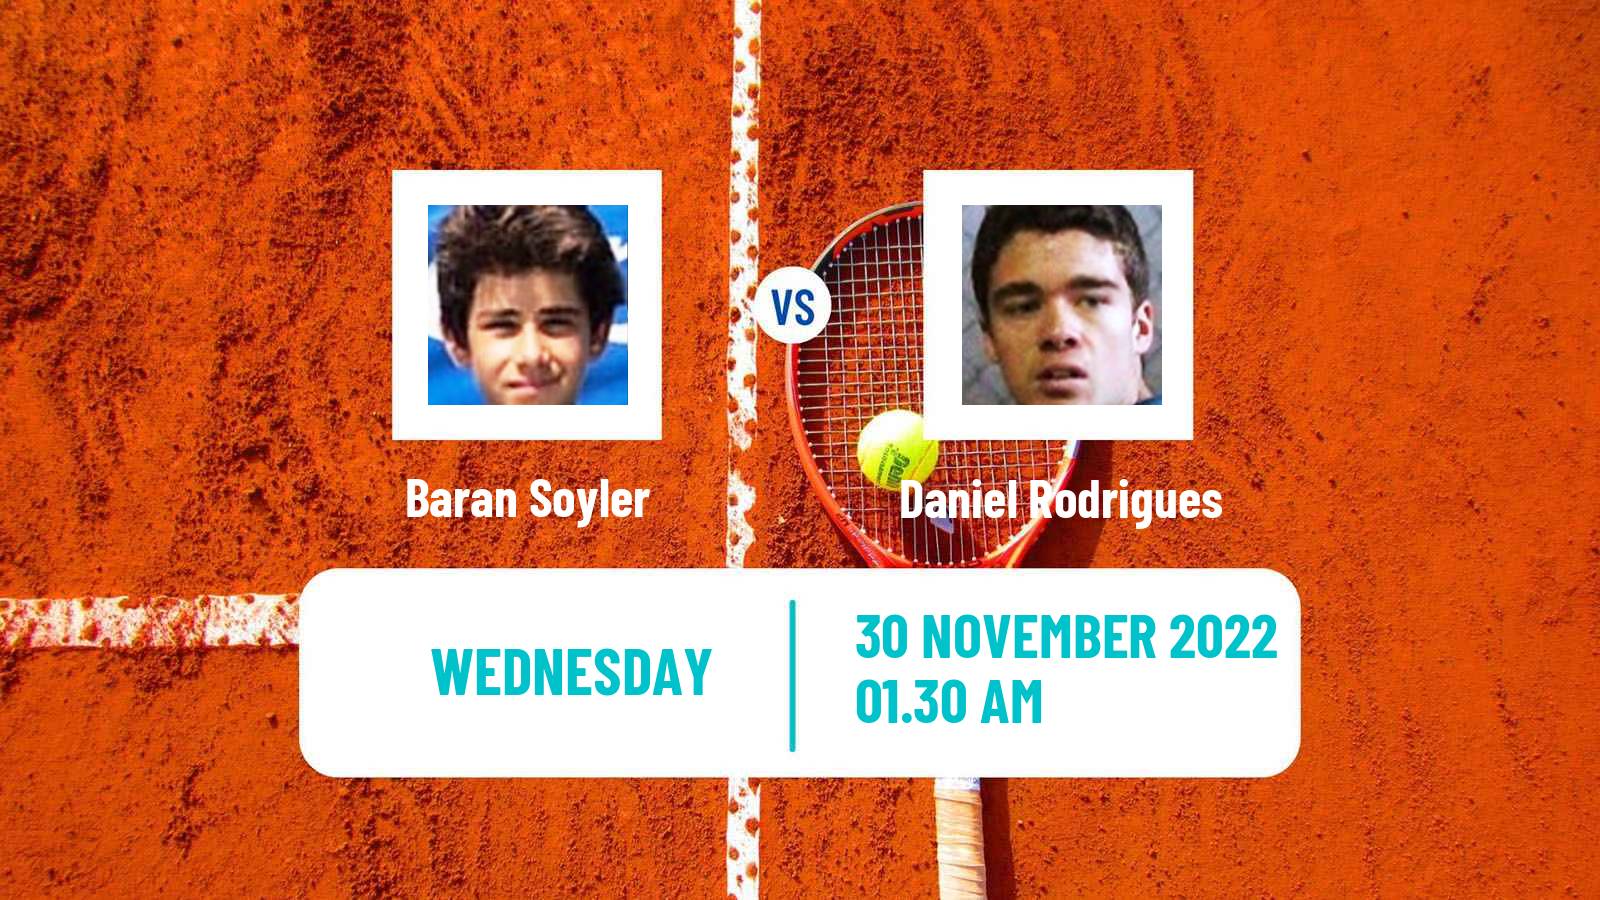 Tennis ITF Tournaments Baran Soyler - Daniel Rodrigues